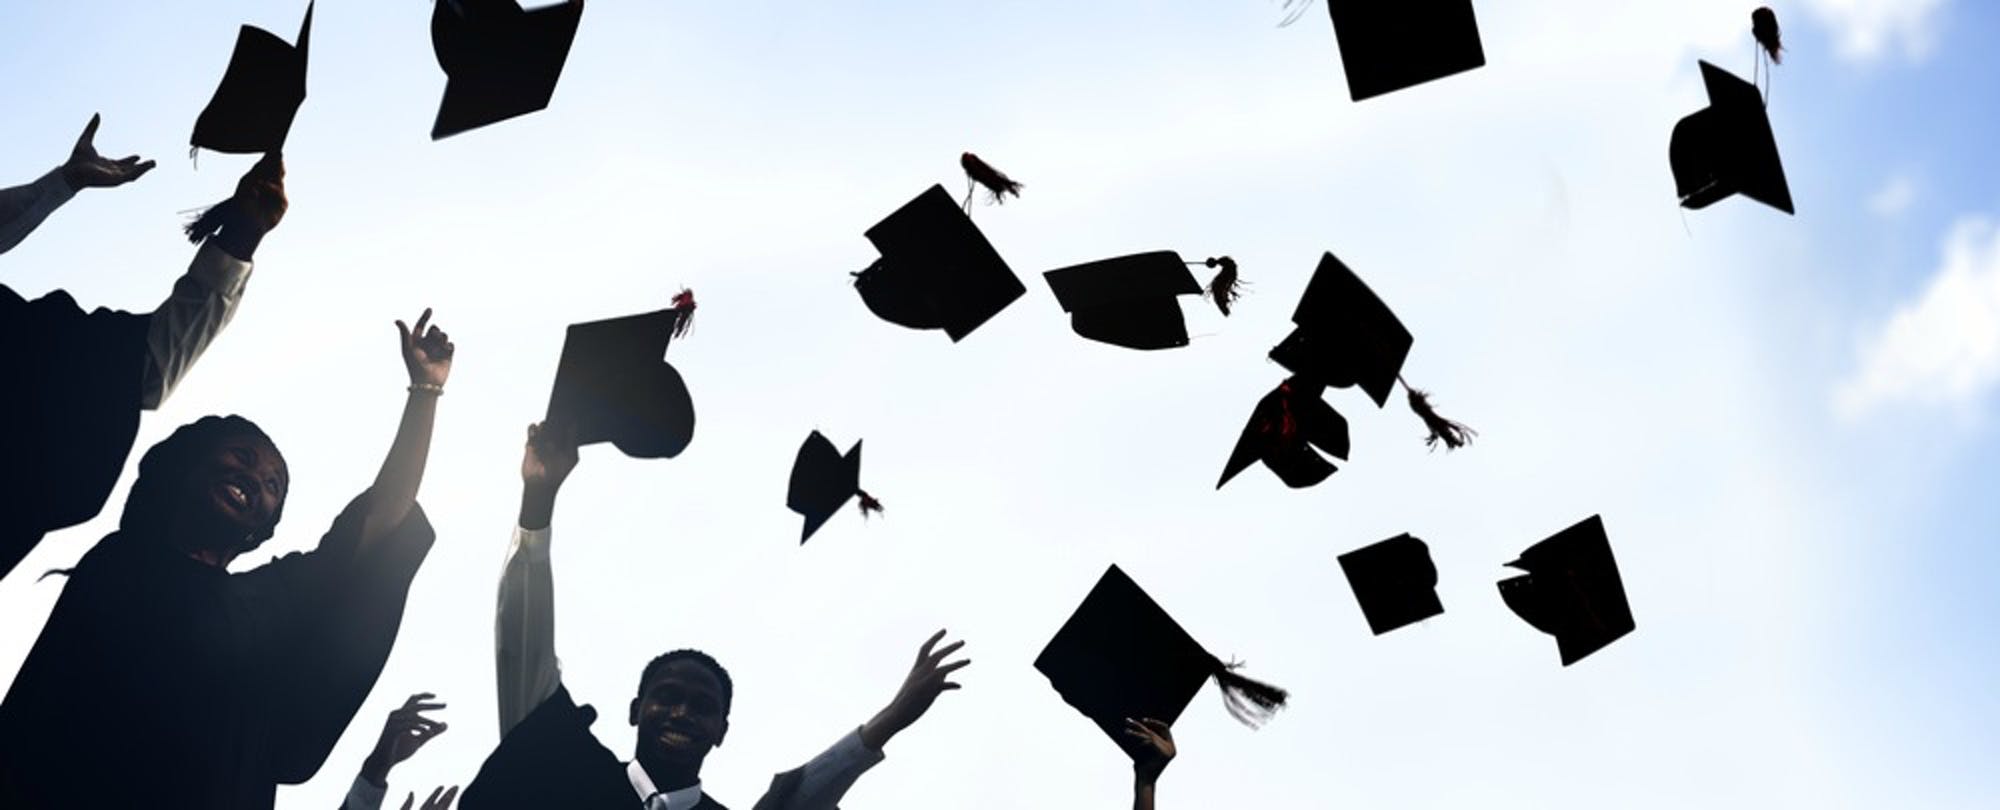 graduates throwing caps in celebration